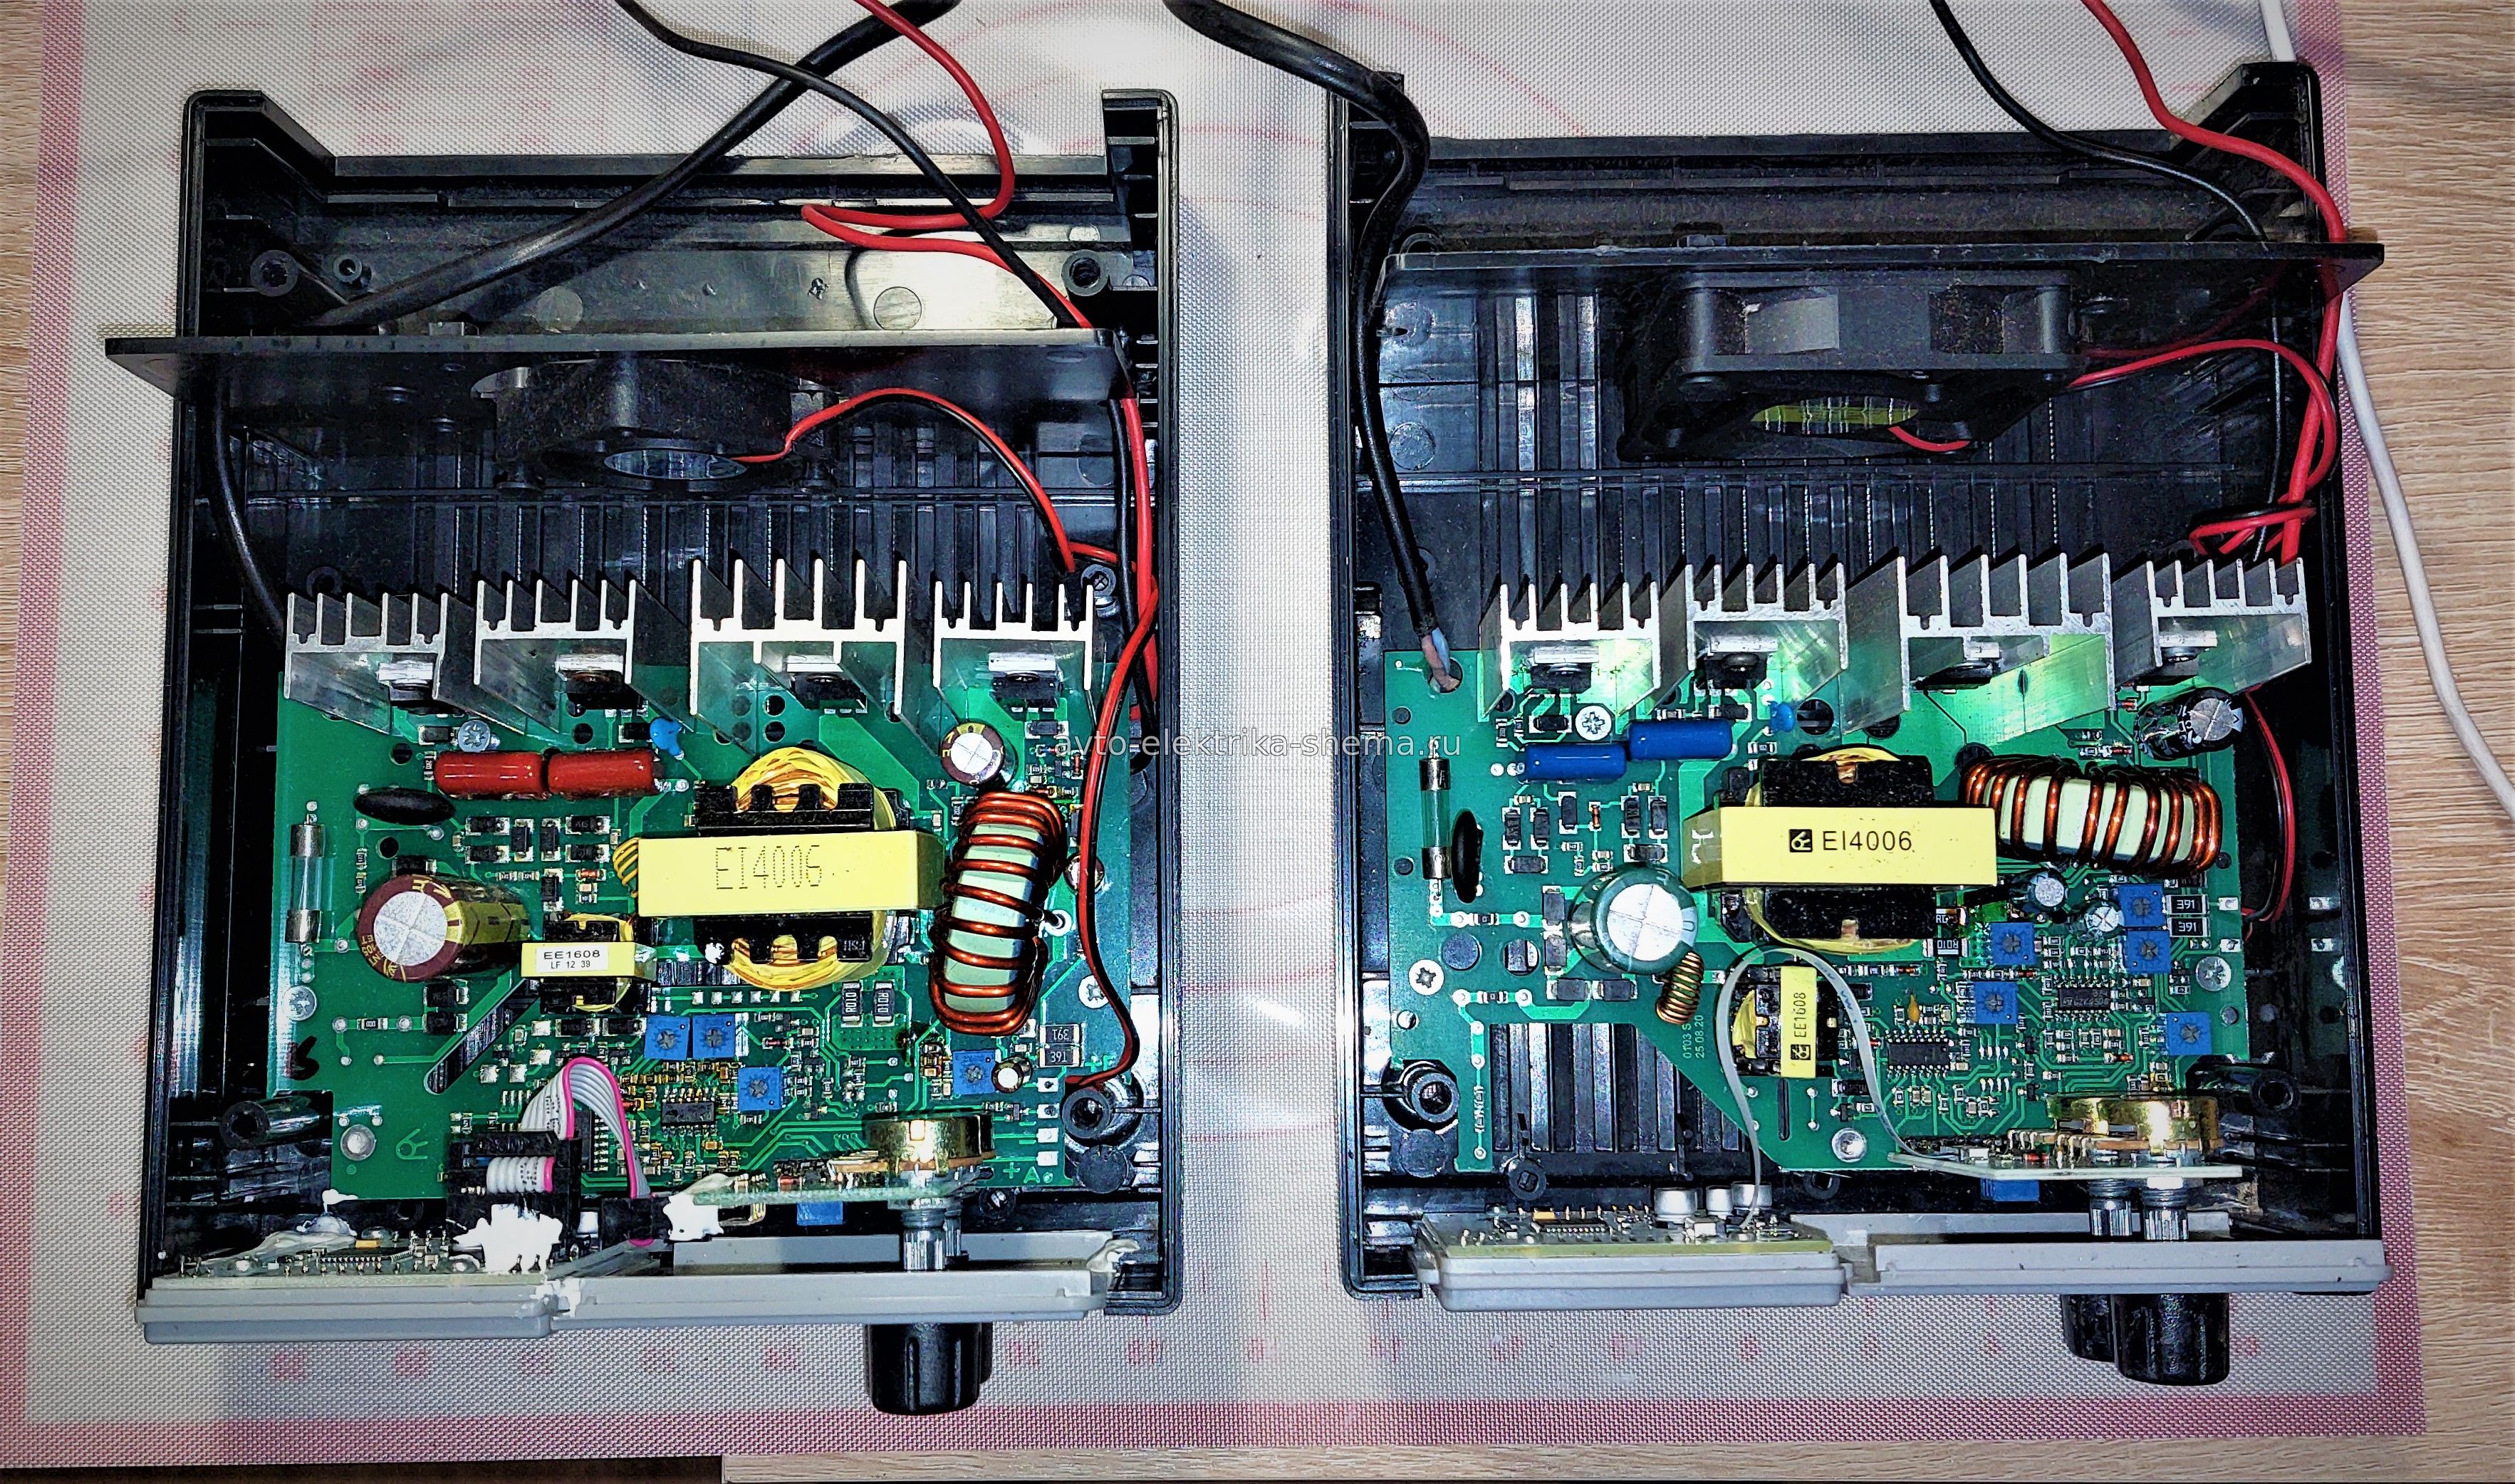 Ремонт зарядного устройства Вымпел - 57. Сравнение двух одинаковых моделей разных годов.